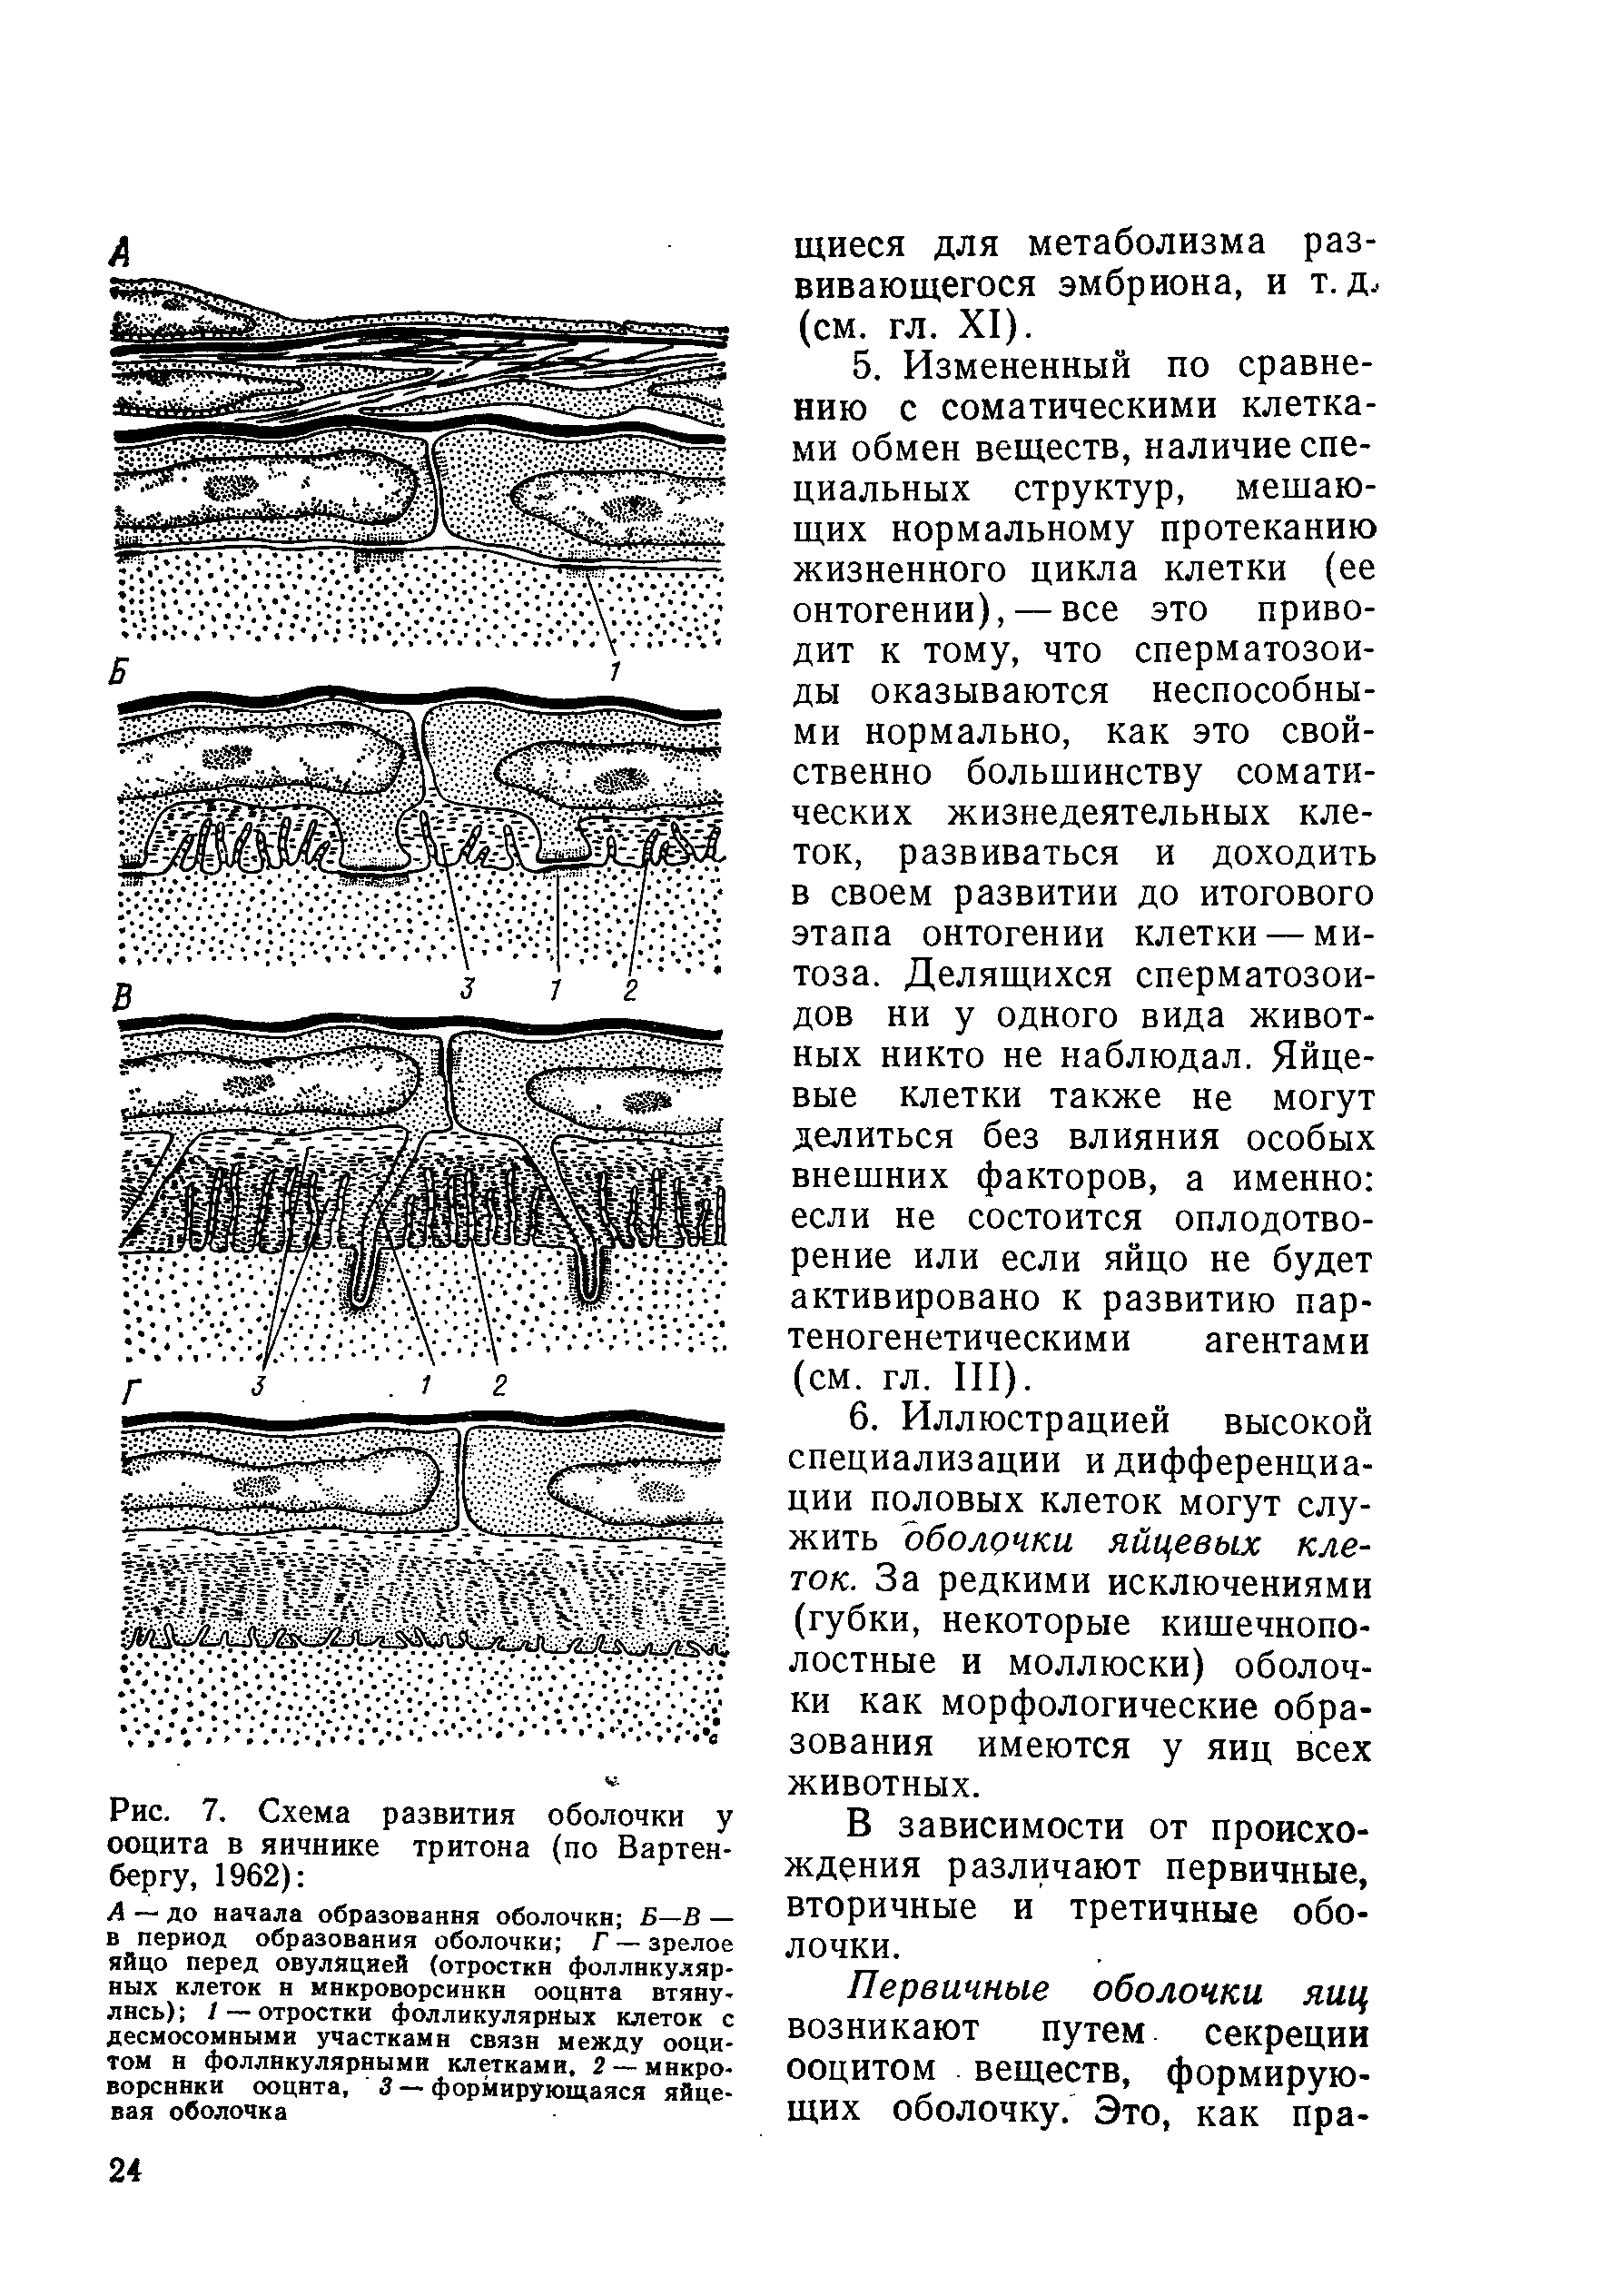 Рис. 7. Схема развития оболочки у ооцита в яичнике тритона (по Вартен-бергу, 1962) ...